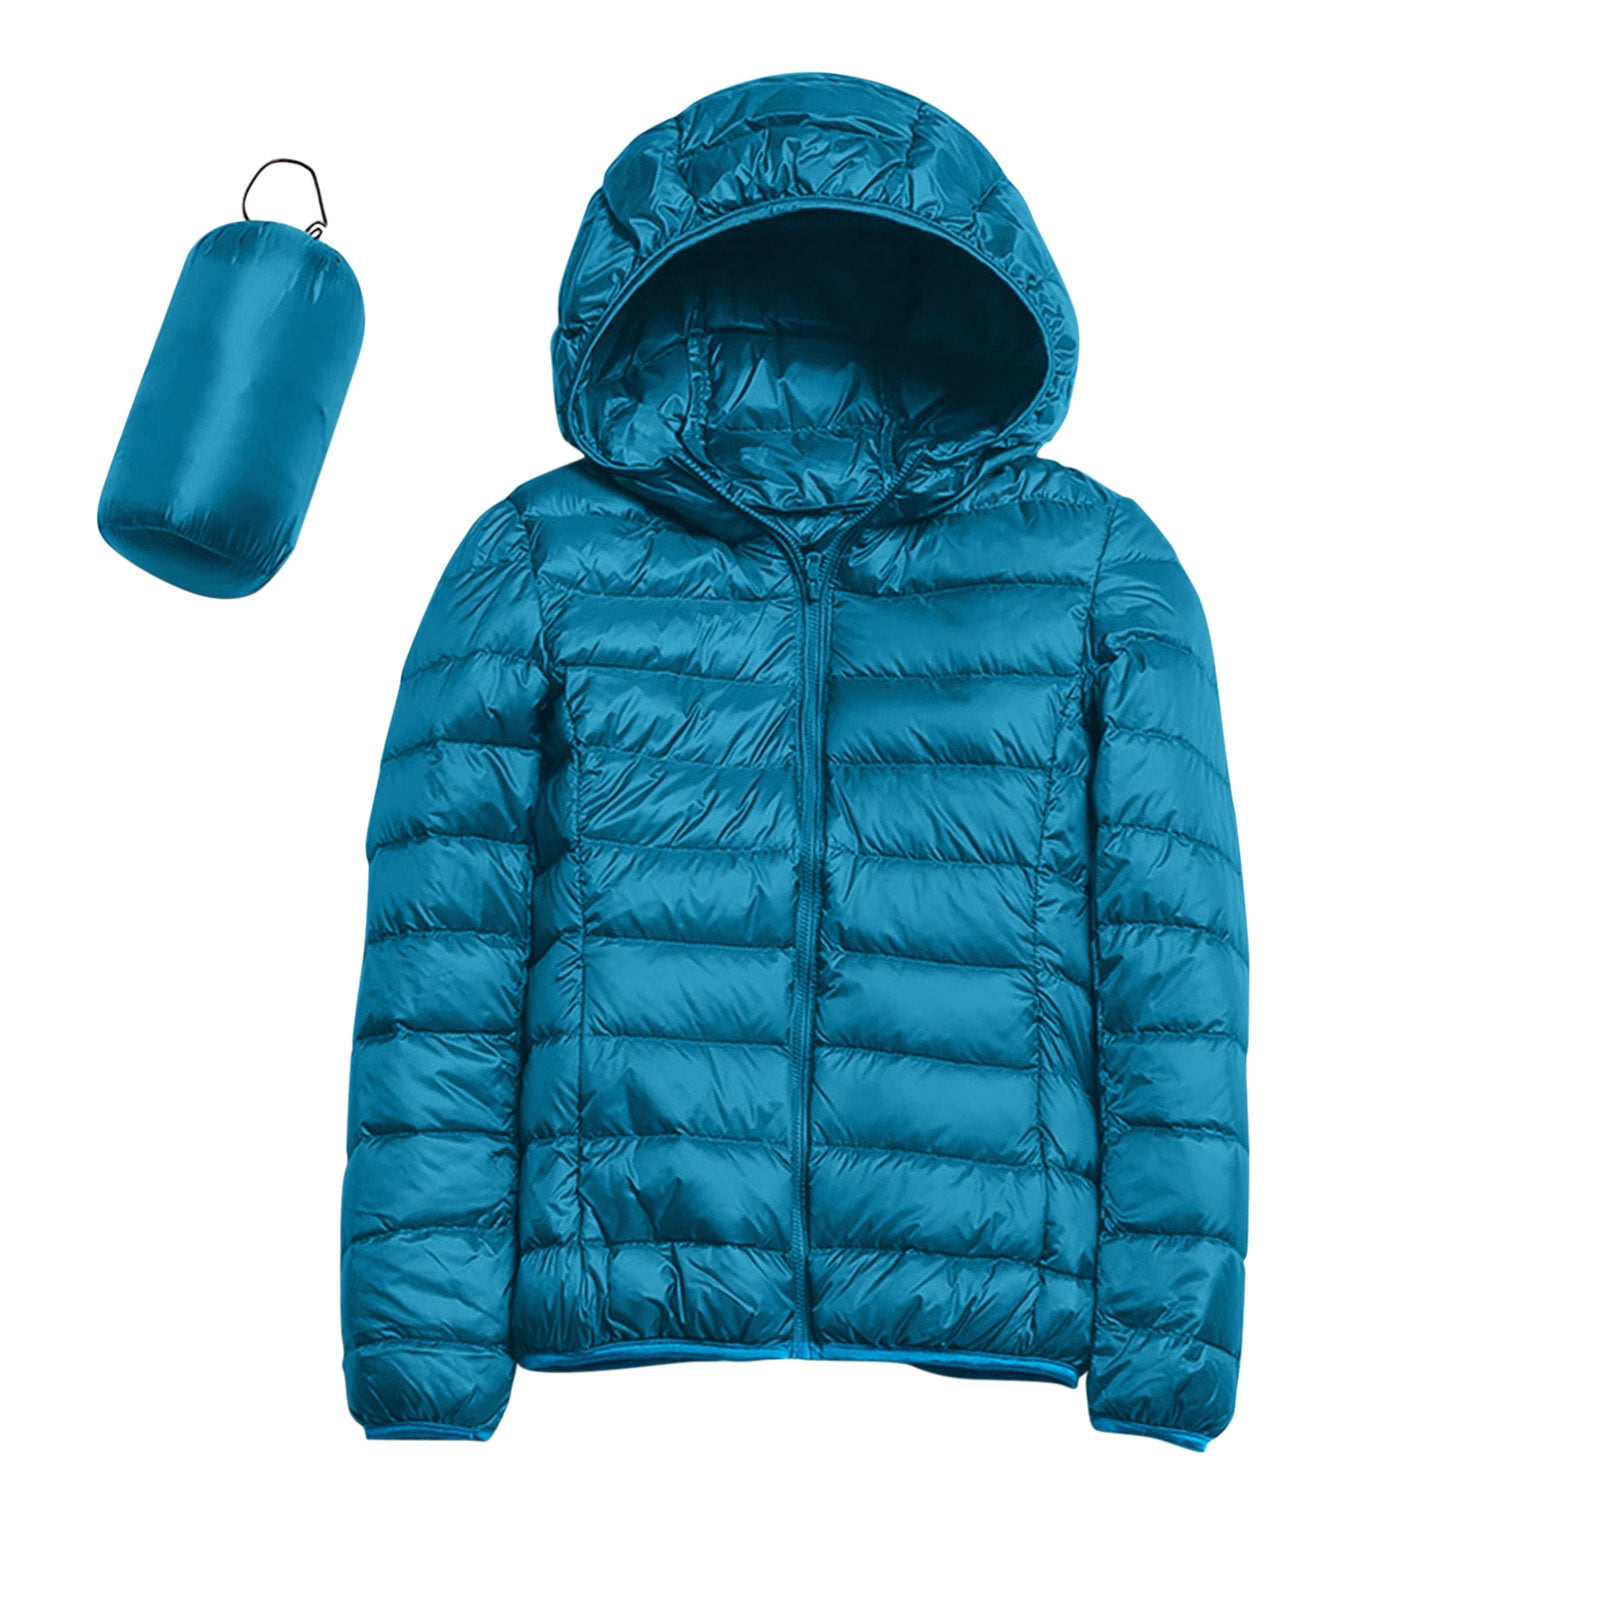 Manxivoo Winter Coat Women Warm Waterproof Lightweight Jacket Hooded ...